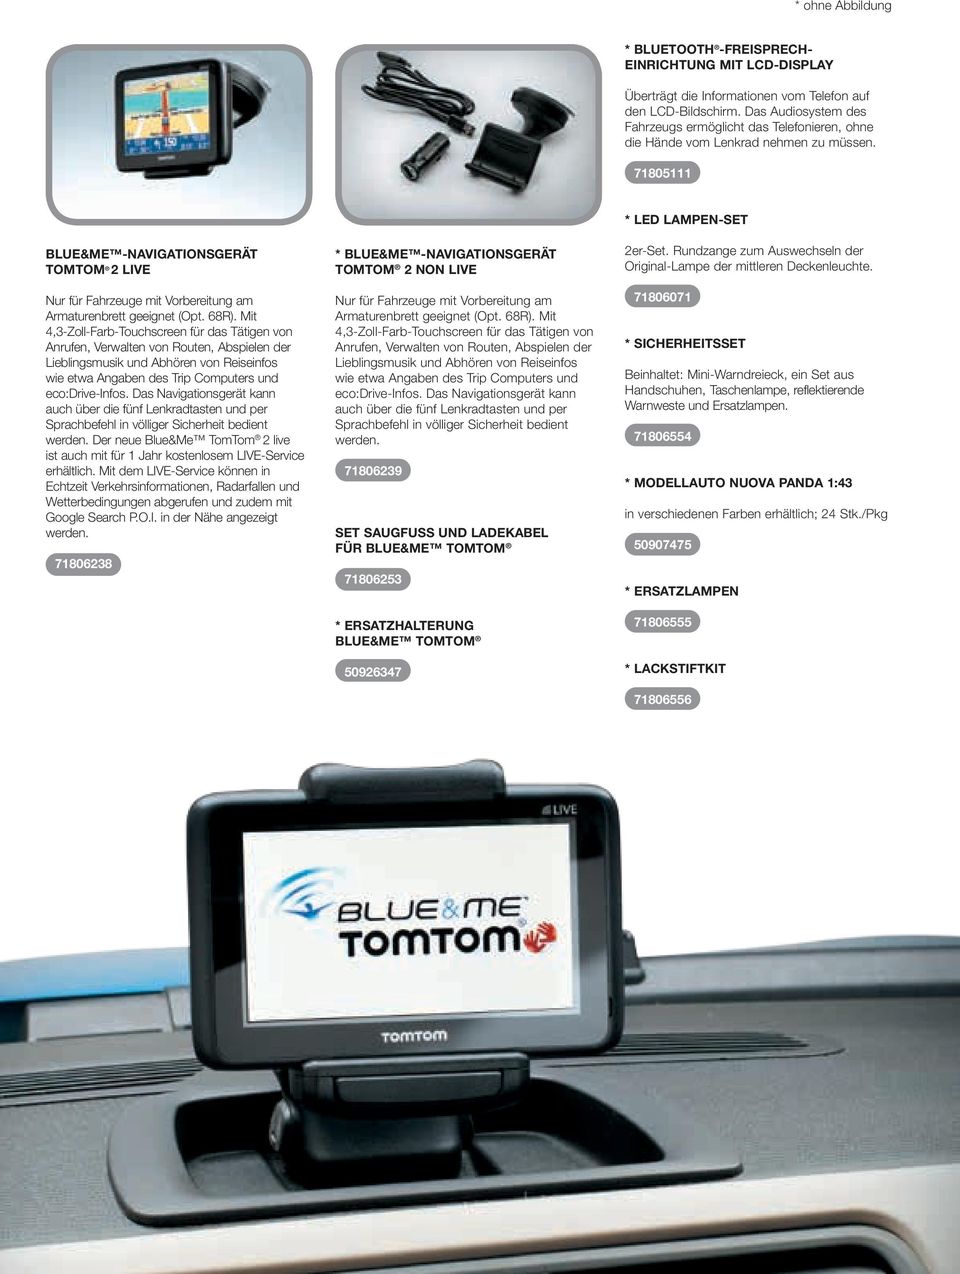 71805111 Blue&me -Navigationsgerät TomTom 2 live Nur für Fahrzeuge mit Vorbereitung am Armaturenbrett geeignet (Opt. 68R).